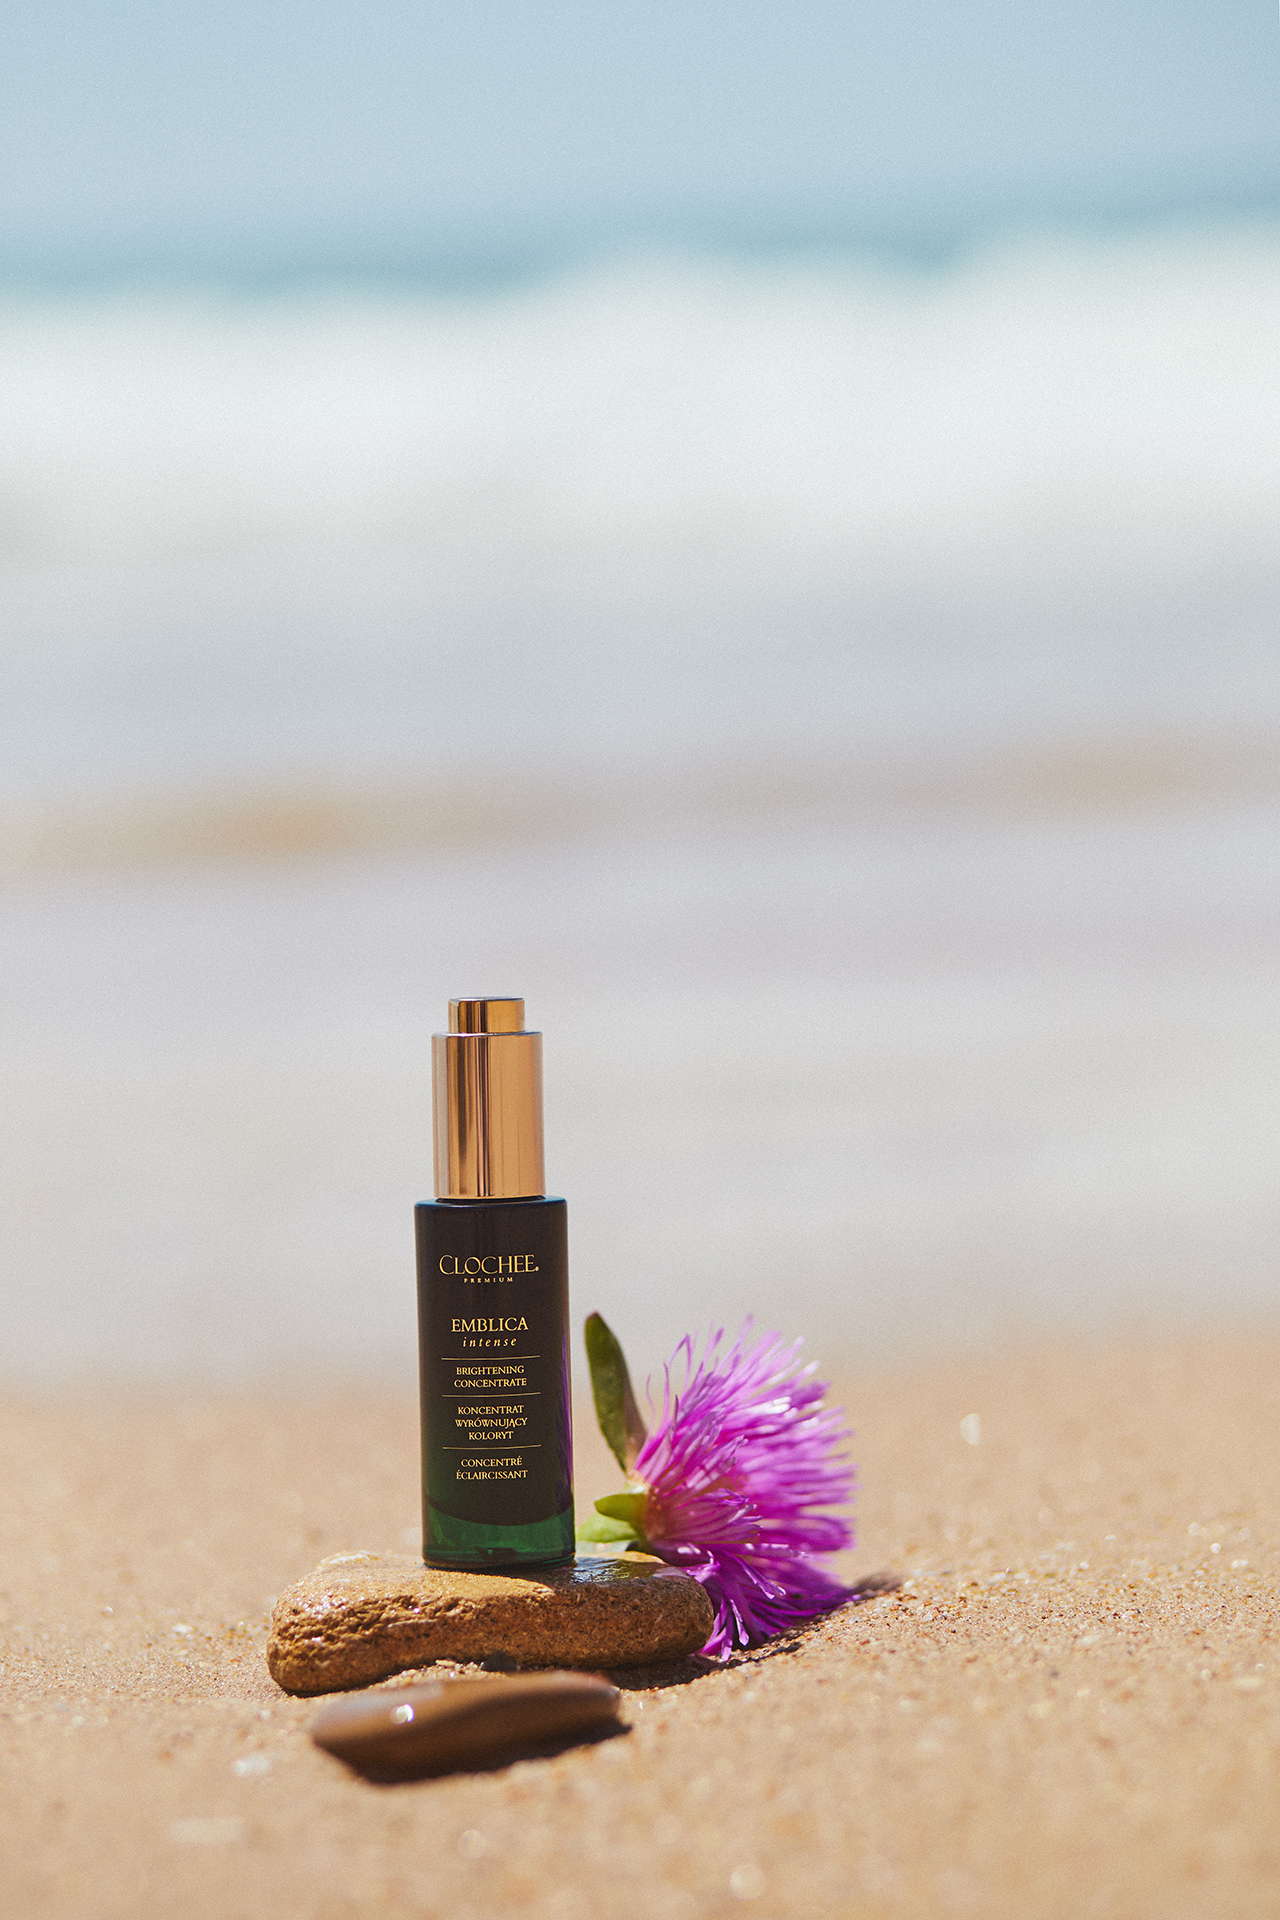 Produkt Clochcee Cosmetics na plaży z różowym kwiatem